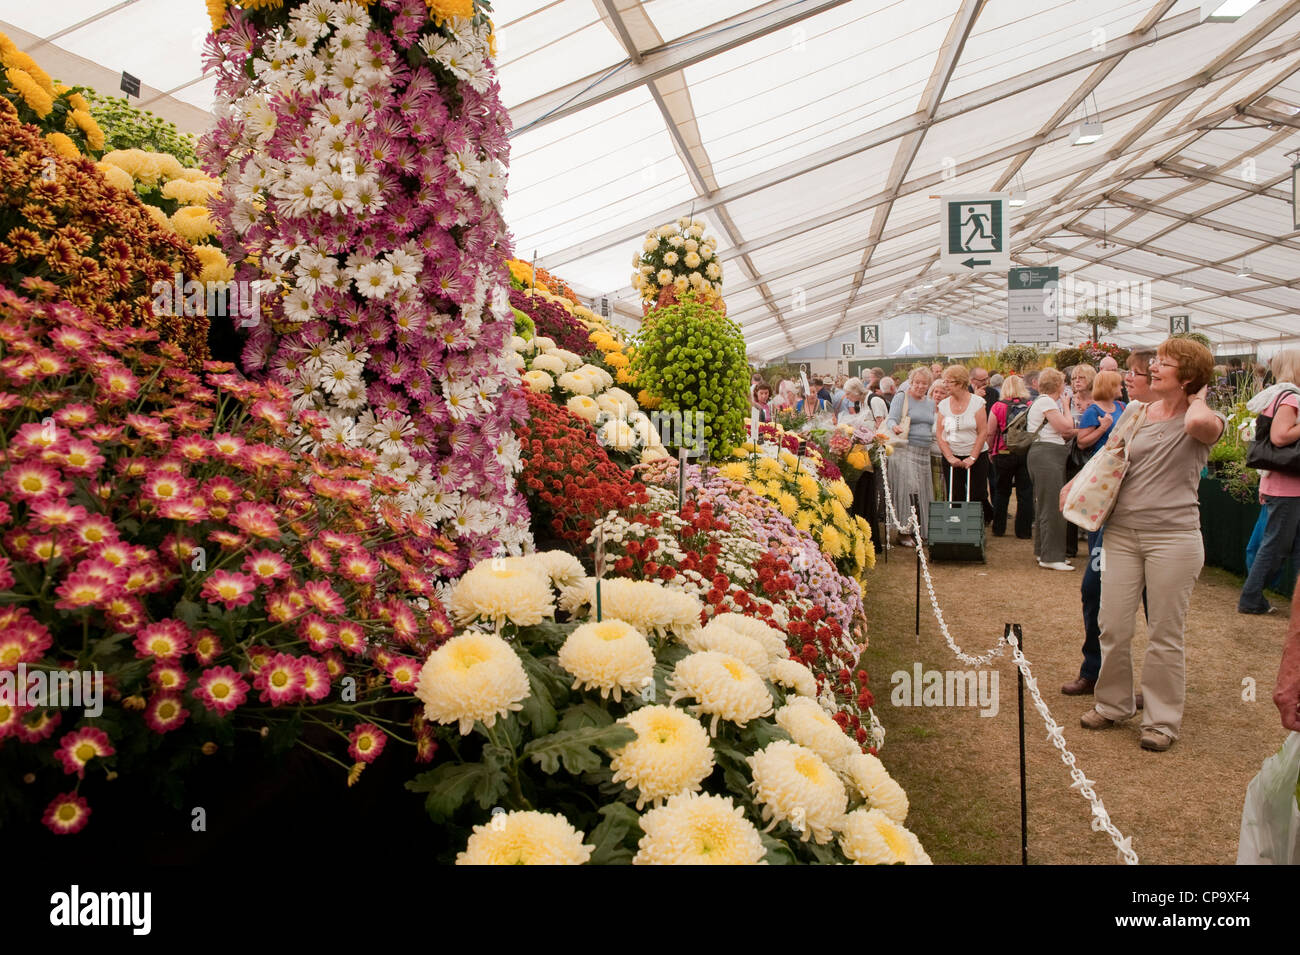 Besucher wunderschöne Blütenpracht im riesigen Festzelt (Personen in Chrysanthemen suchen) - RHS Flower Show, Tatton Park, Cheshire, England, UK. Stockfoto